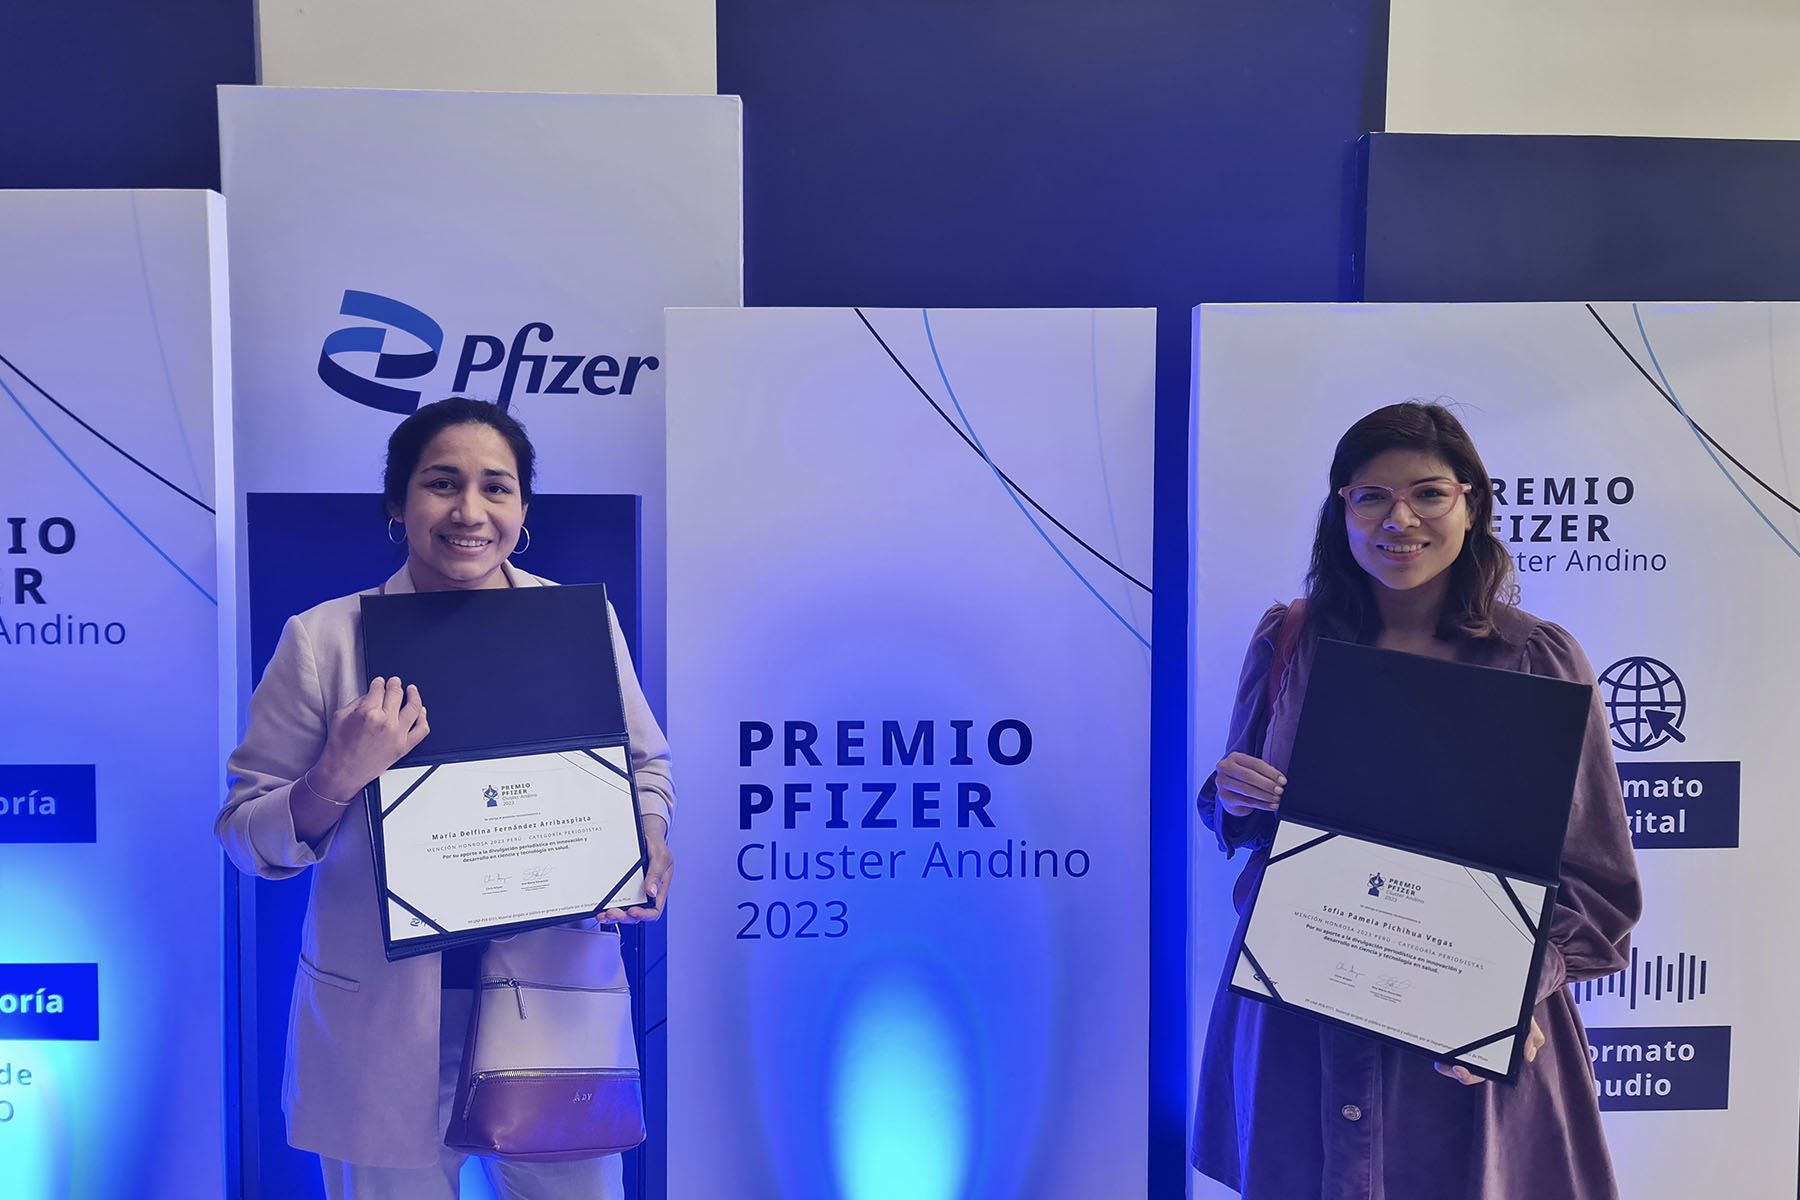 Las periodistas de la Agencia Andina, María Fernández Arribasplata y Sofía Pichihua Vegas, fueron reconocidas por su destacada labor en la divulgación en innovación y desarrollo en ciencia y tecnología en salud.